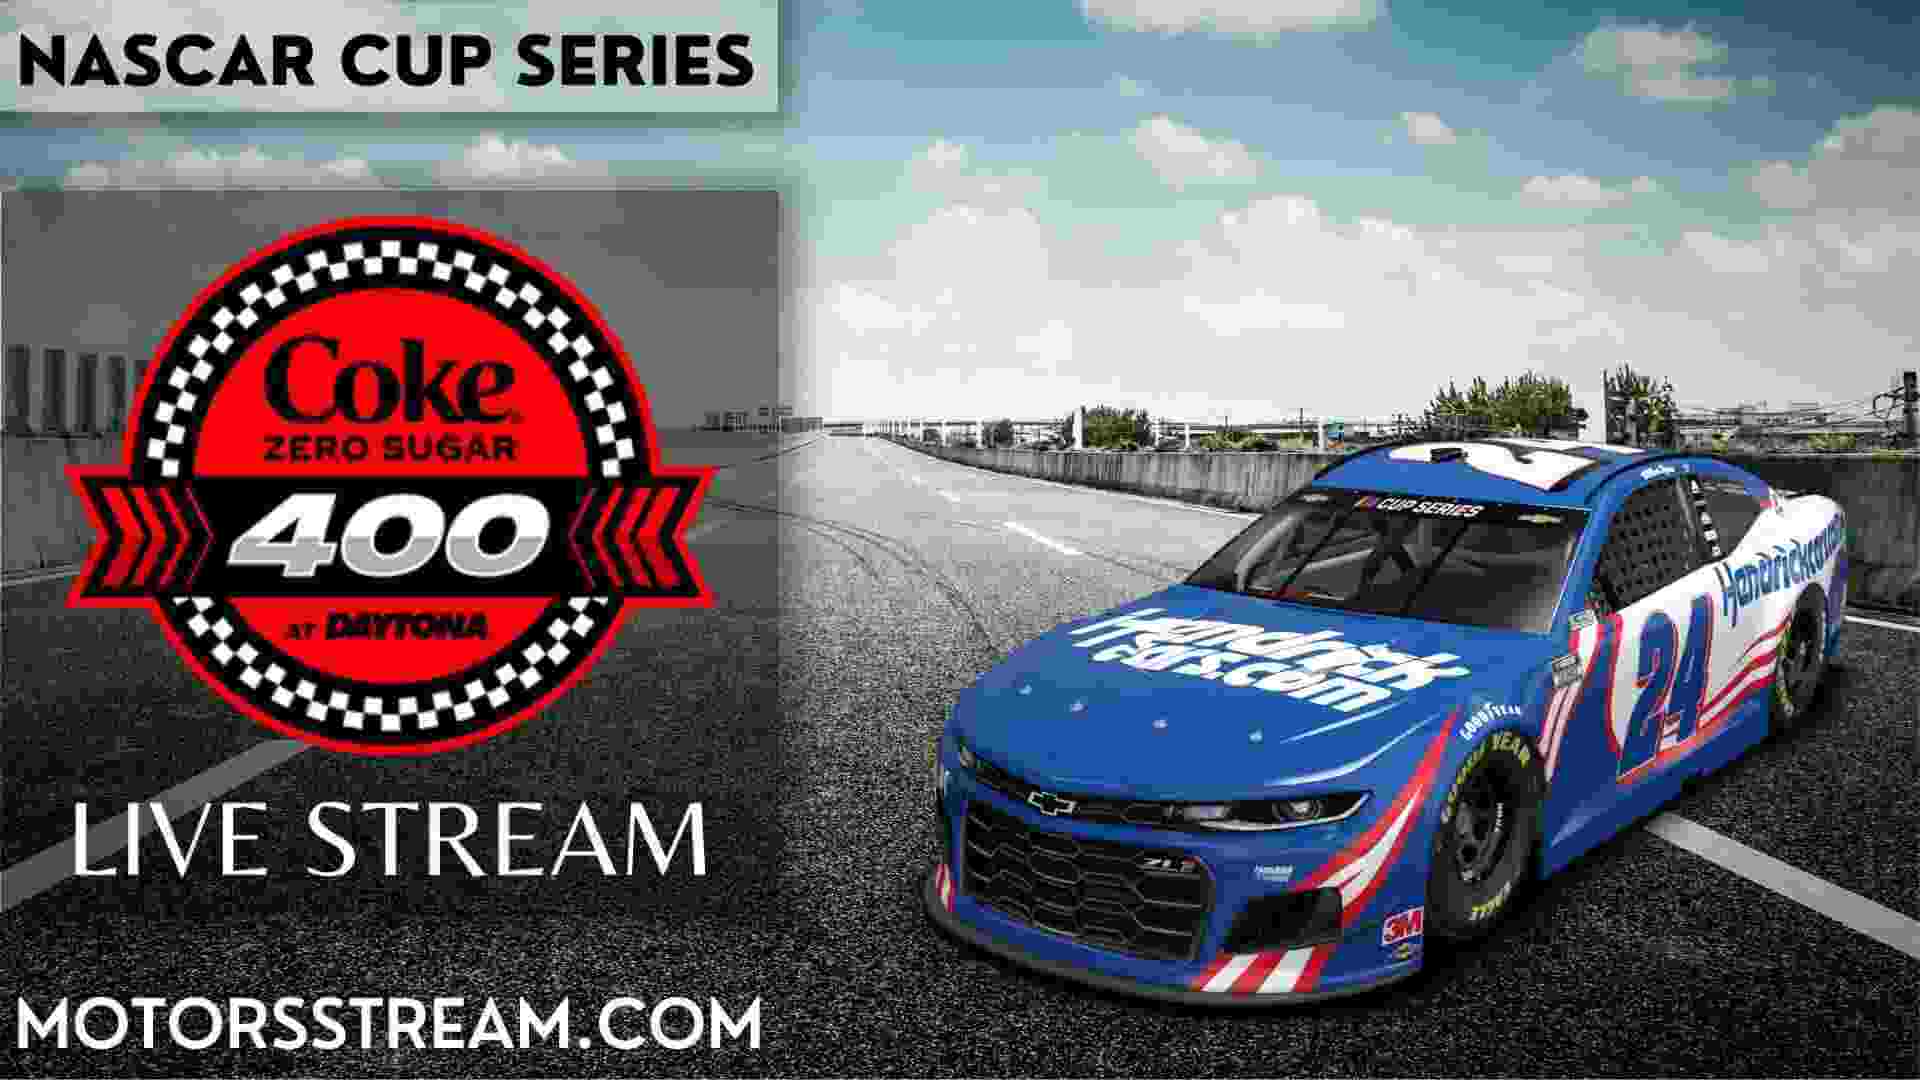 Coke Zero Sugar 400 Live Stream NASCAR Cup